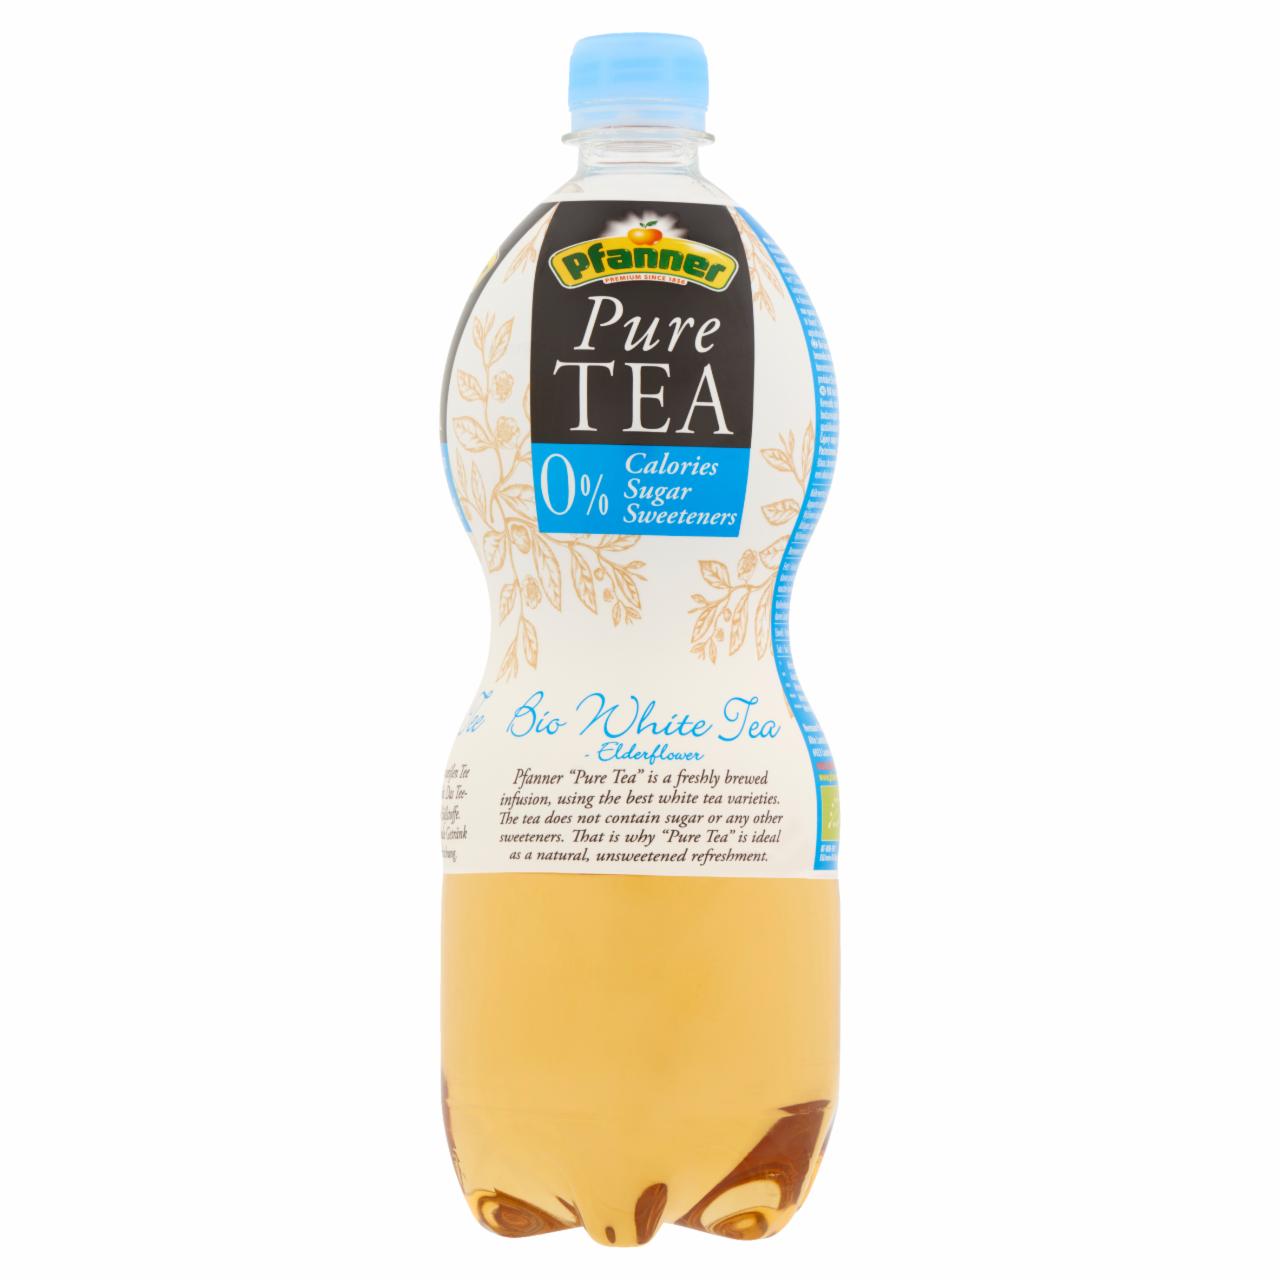 Képek - Pfanner Pure Tea BIO tea üdítőital citrom- és bodzavirág ízesítéssel fehér teából és bodzából 1 l